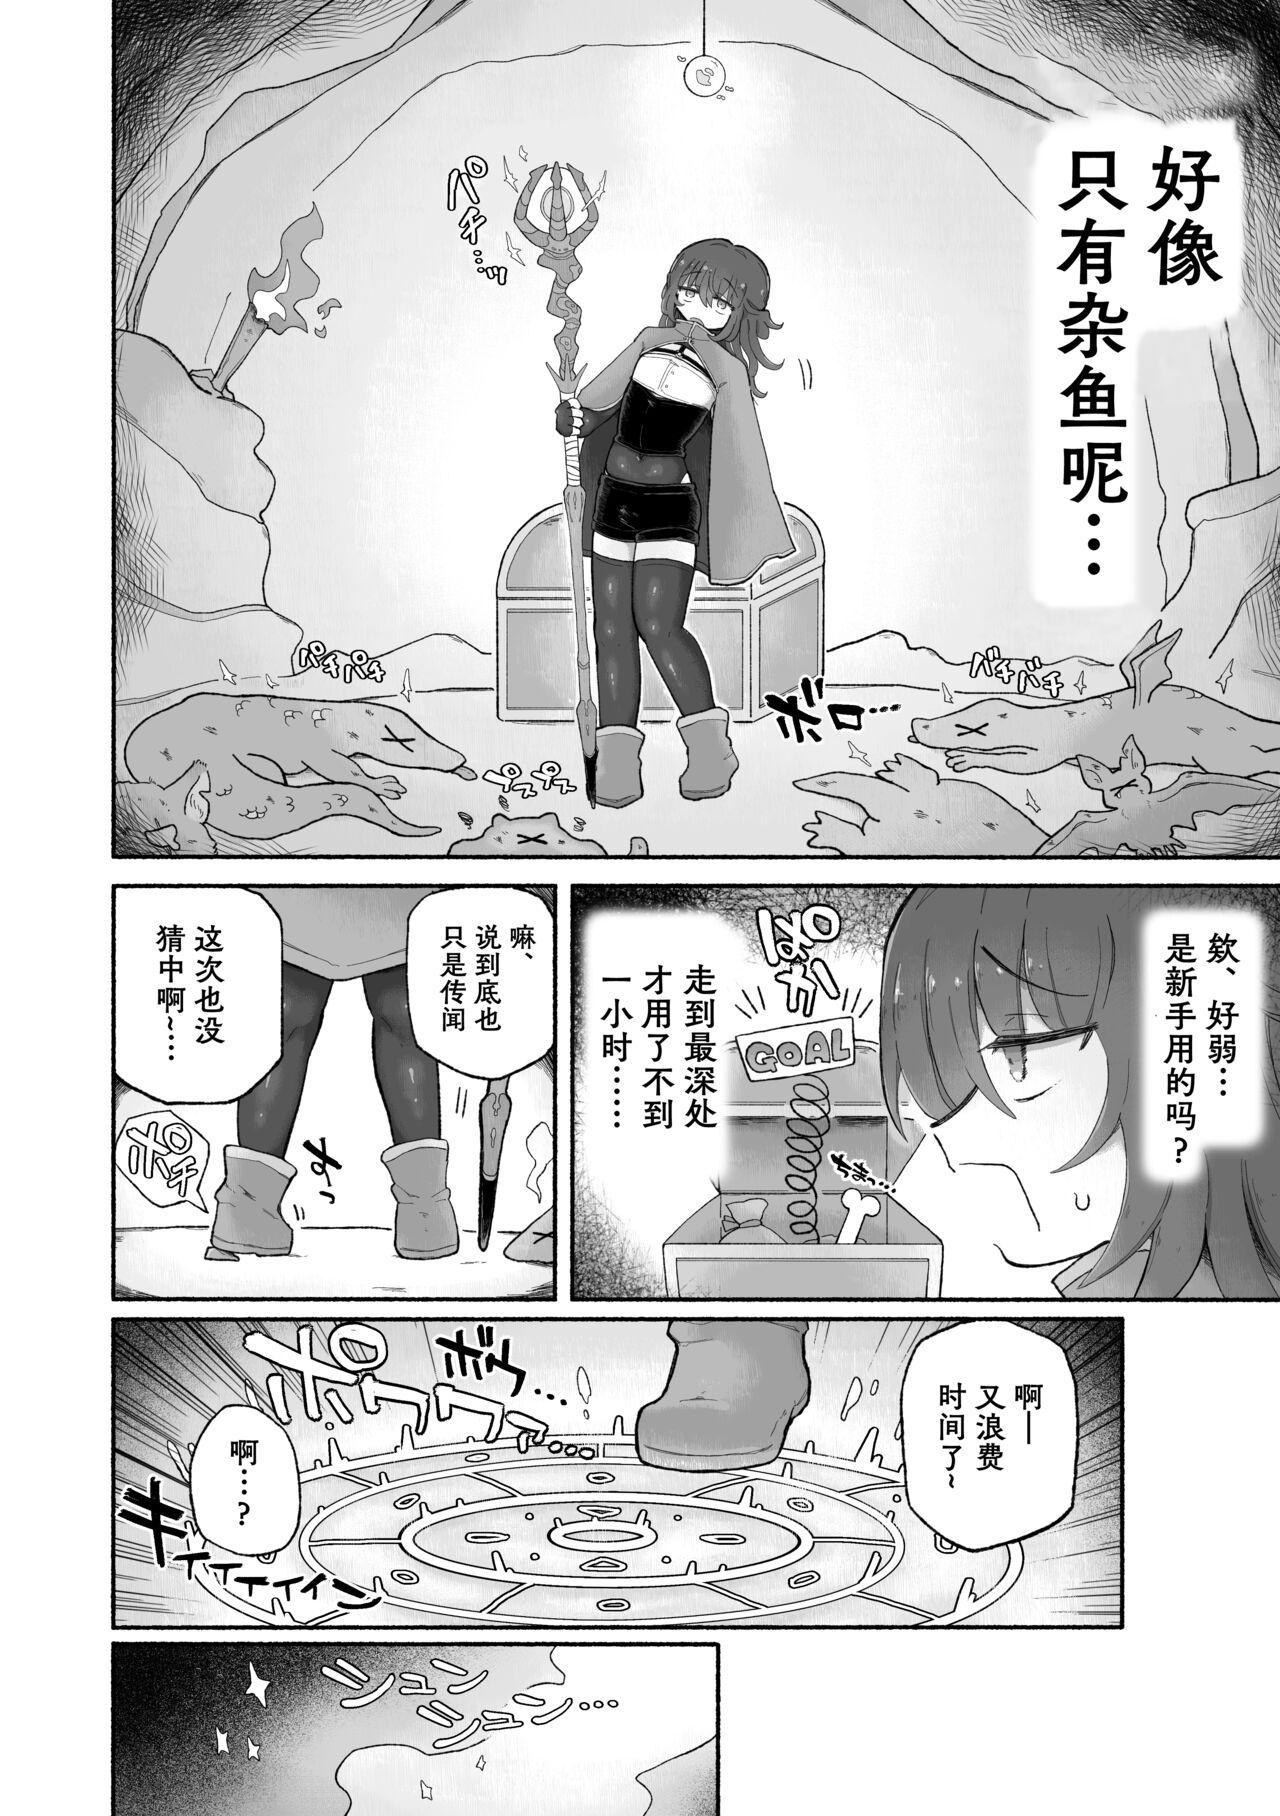 Anime Do hamari chui no kyosei danjon! 〜Mugen shasei no kairaku jigoku e yokoso〜 - Original Soapy Massage - Page 5